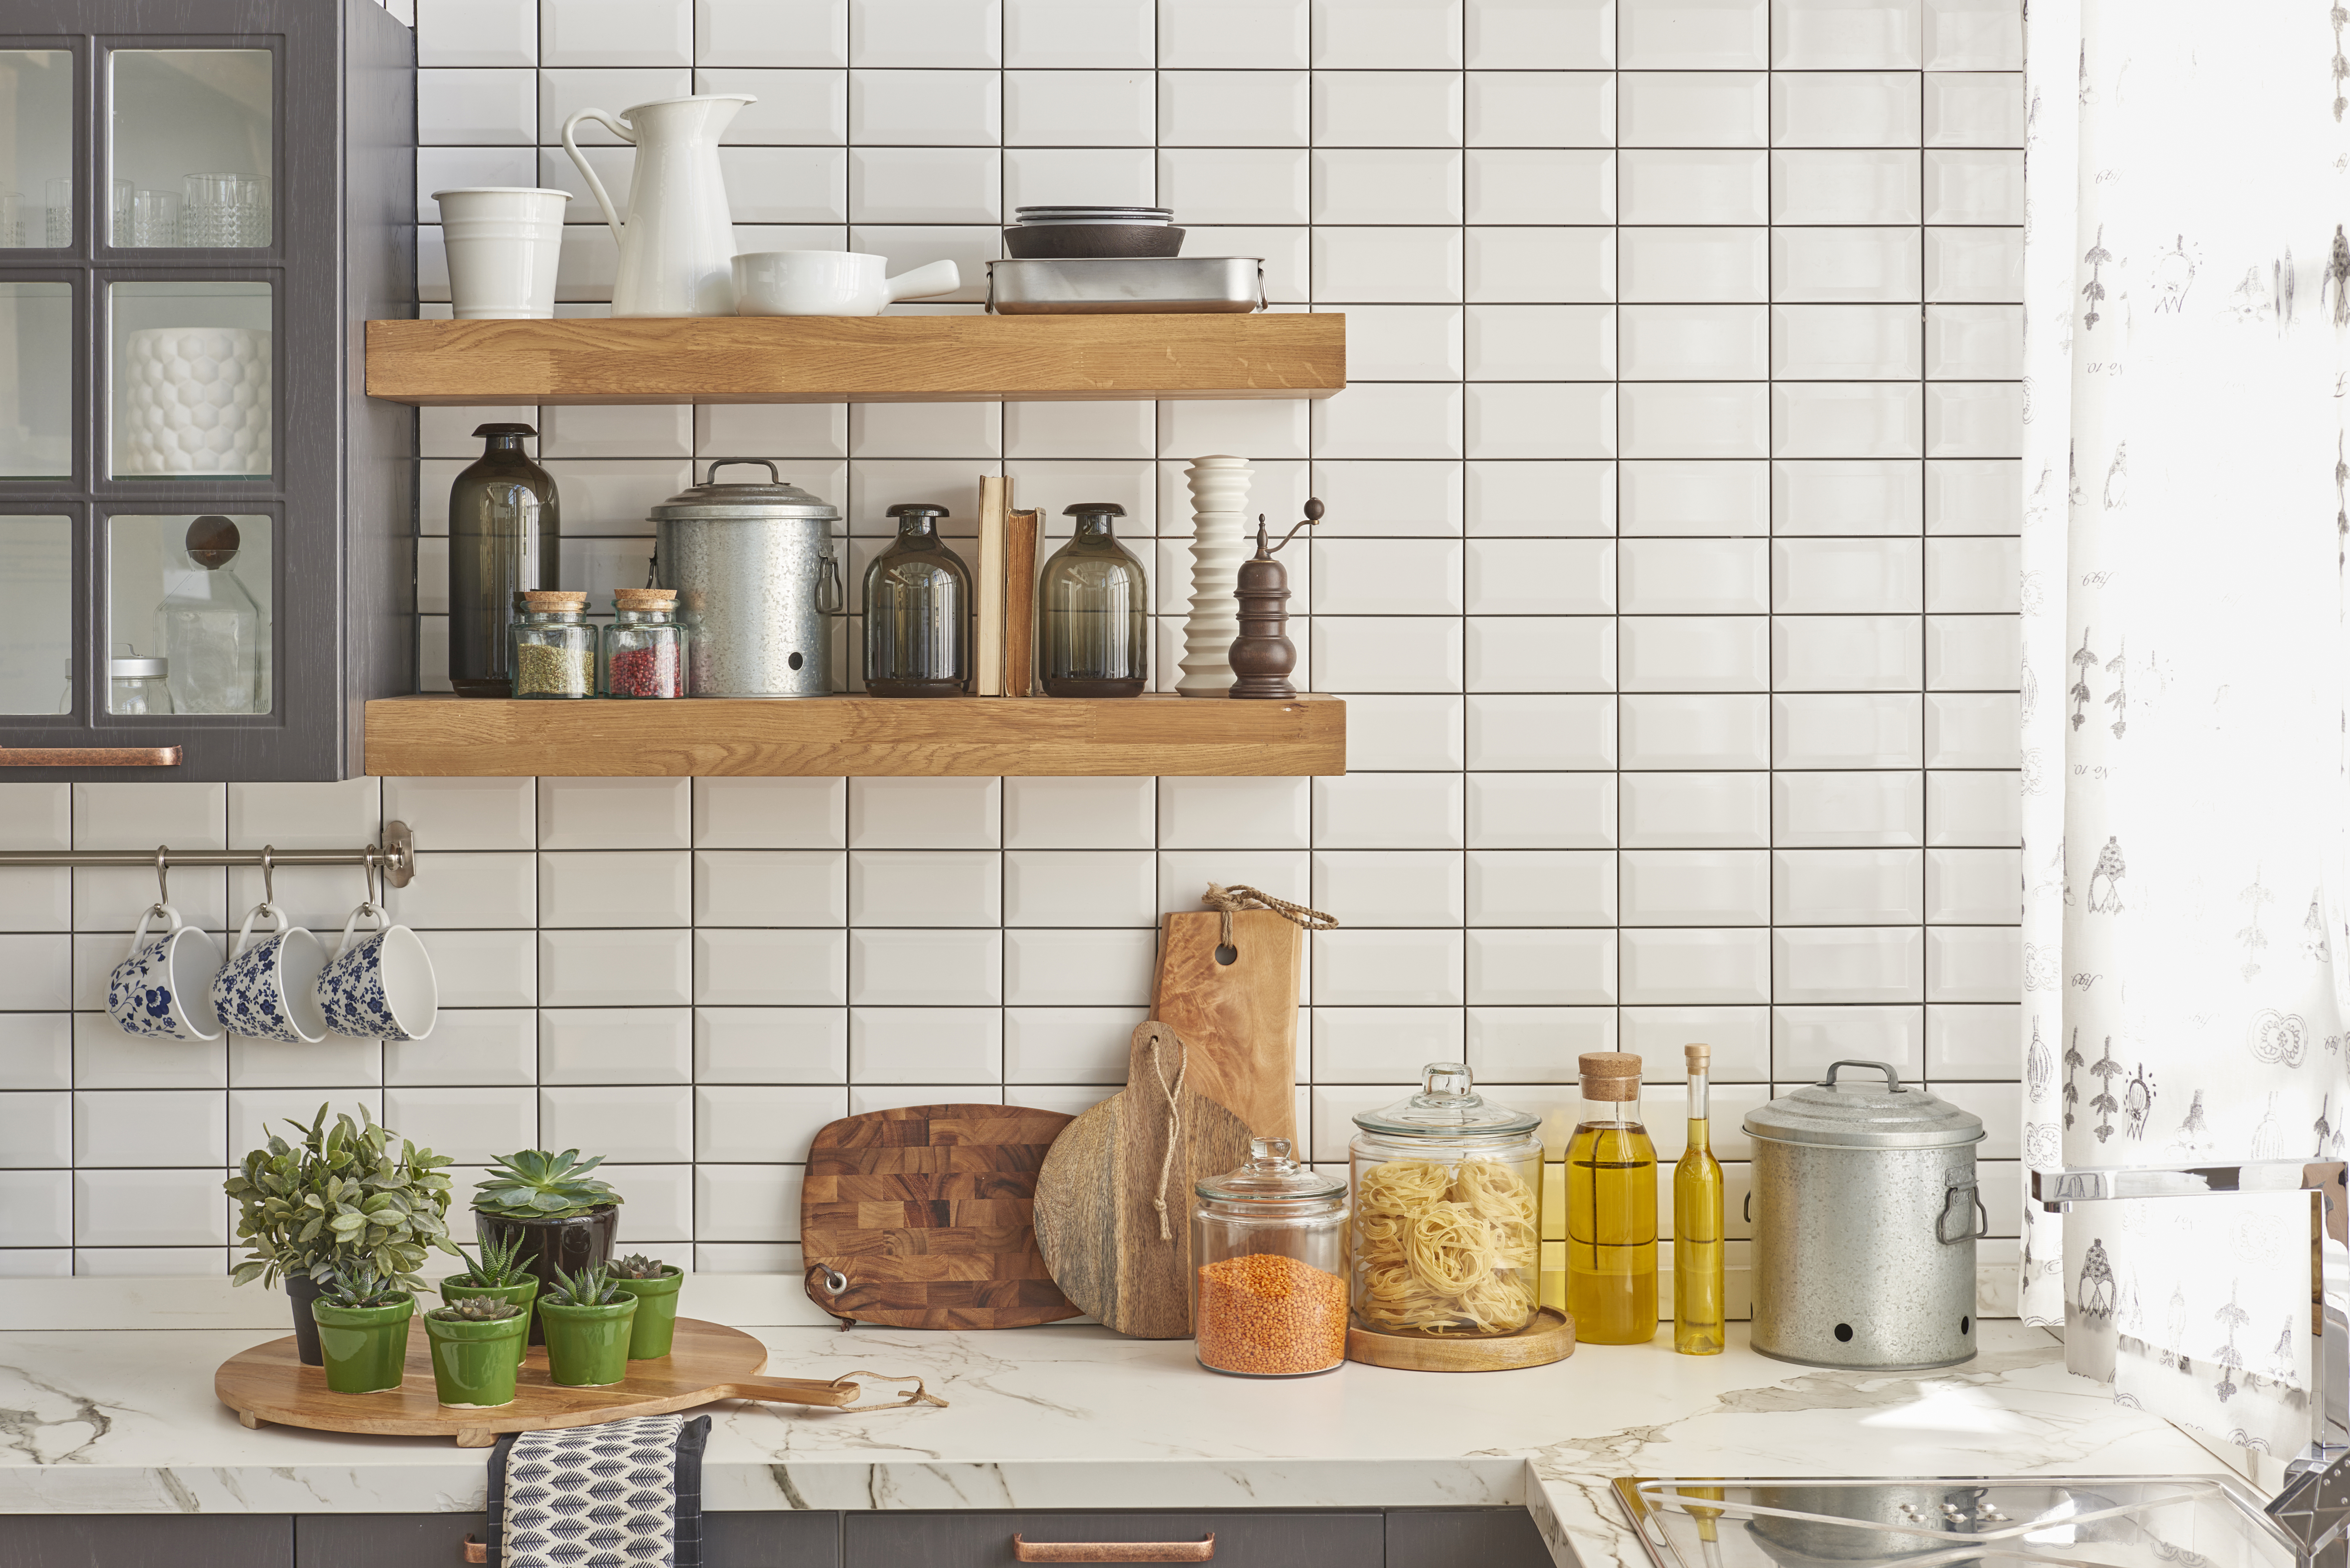 21 Small Kitchen Storage Ideas That Actually Work